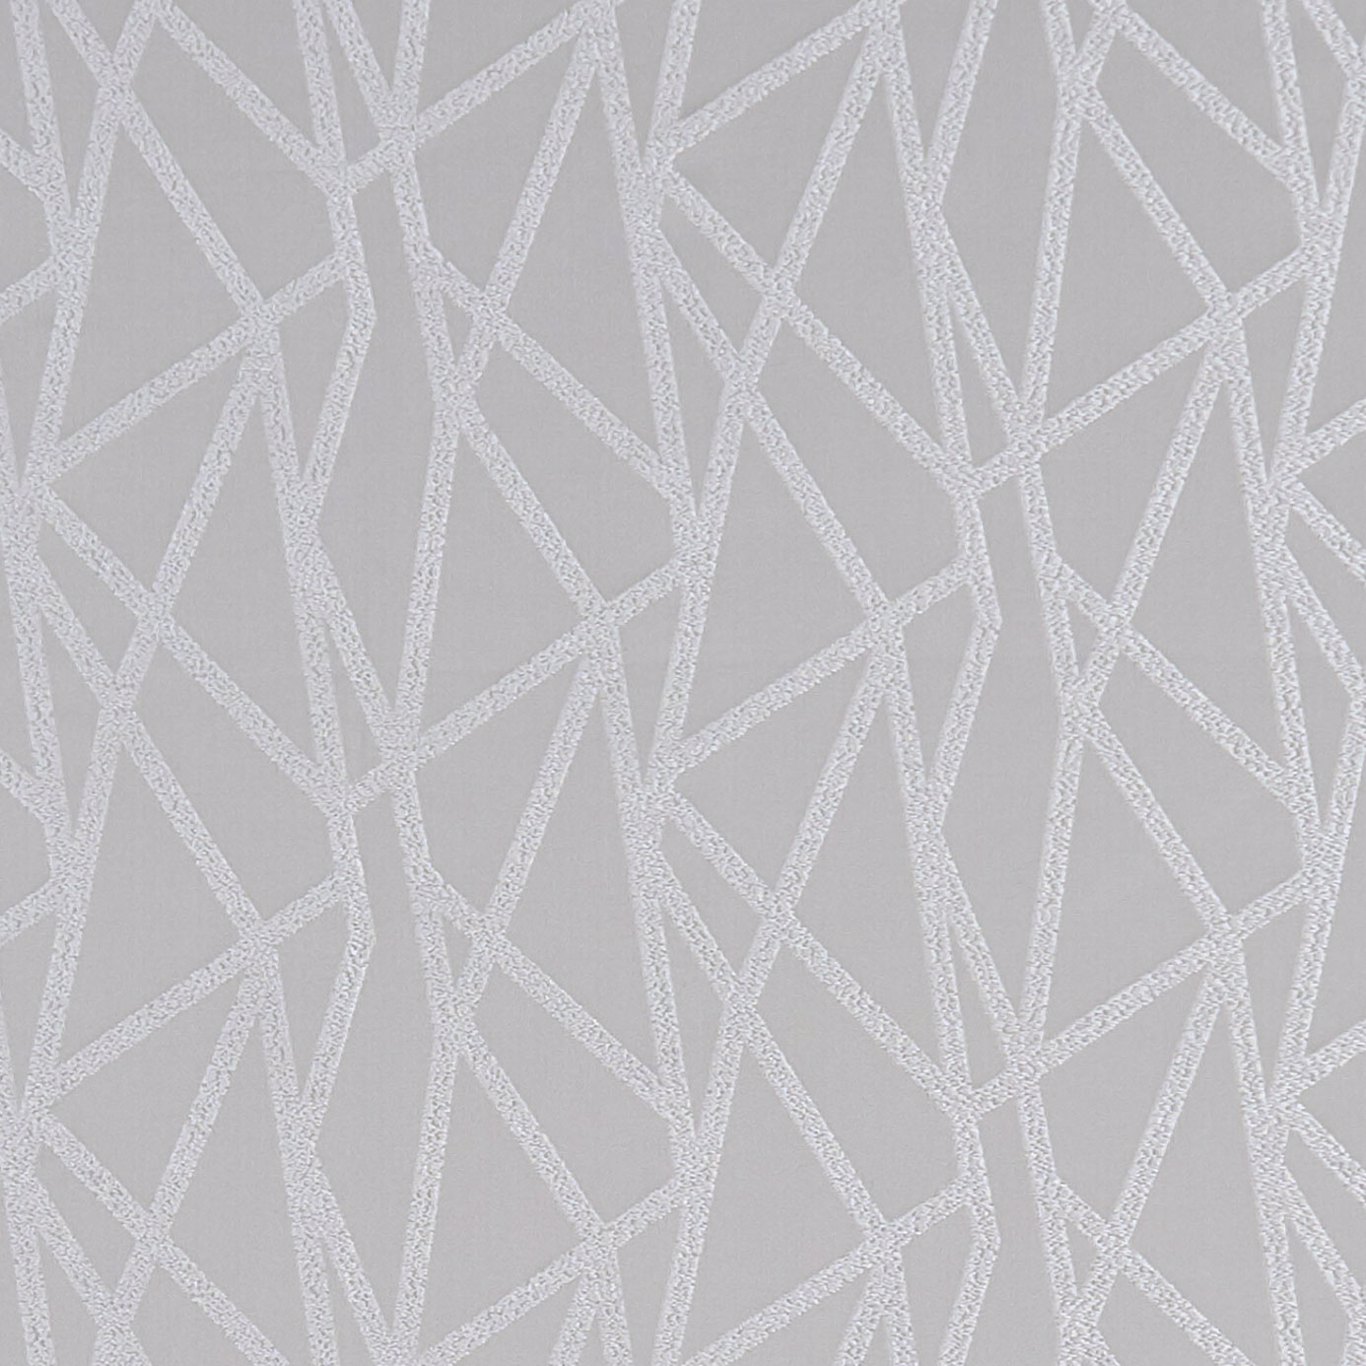 Geomo Silver Fabric by STG